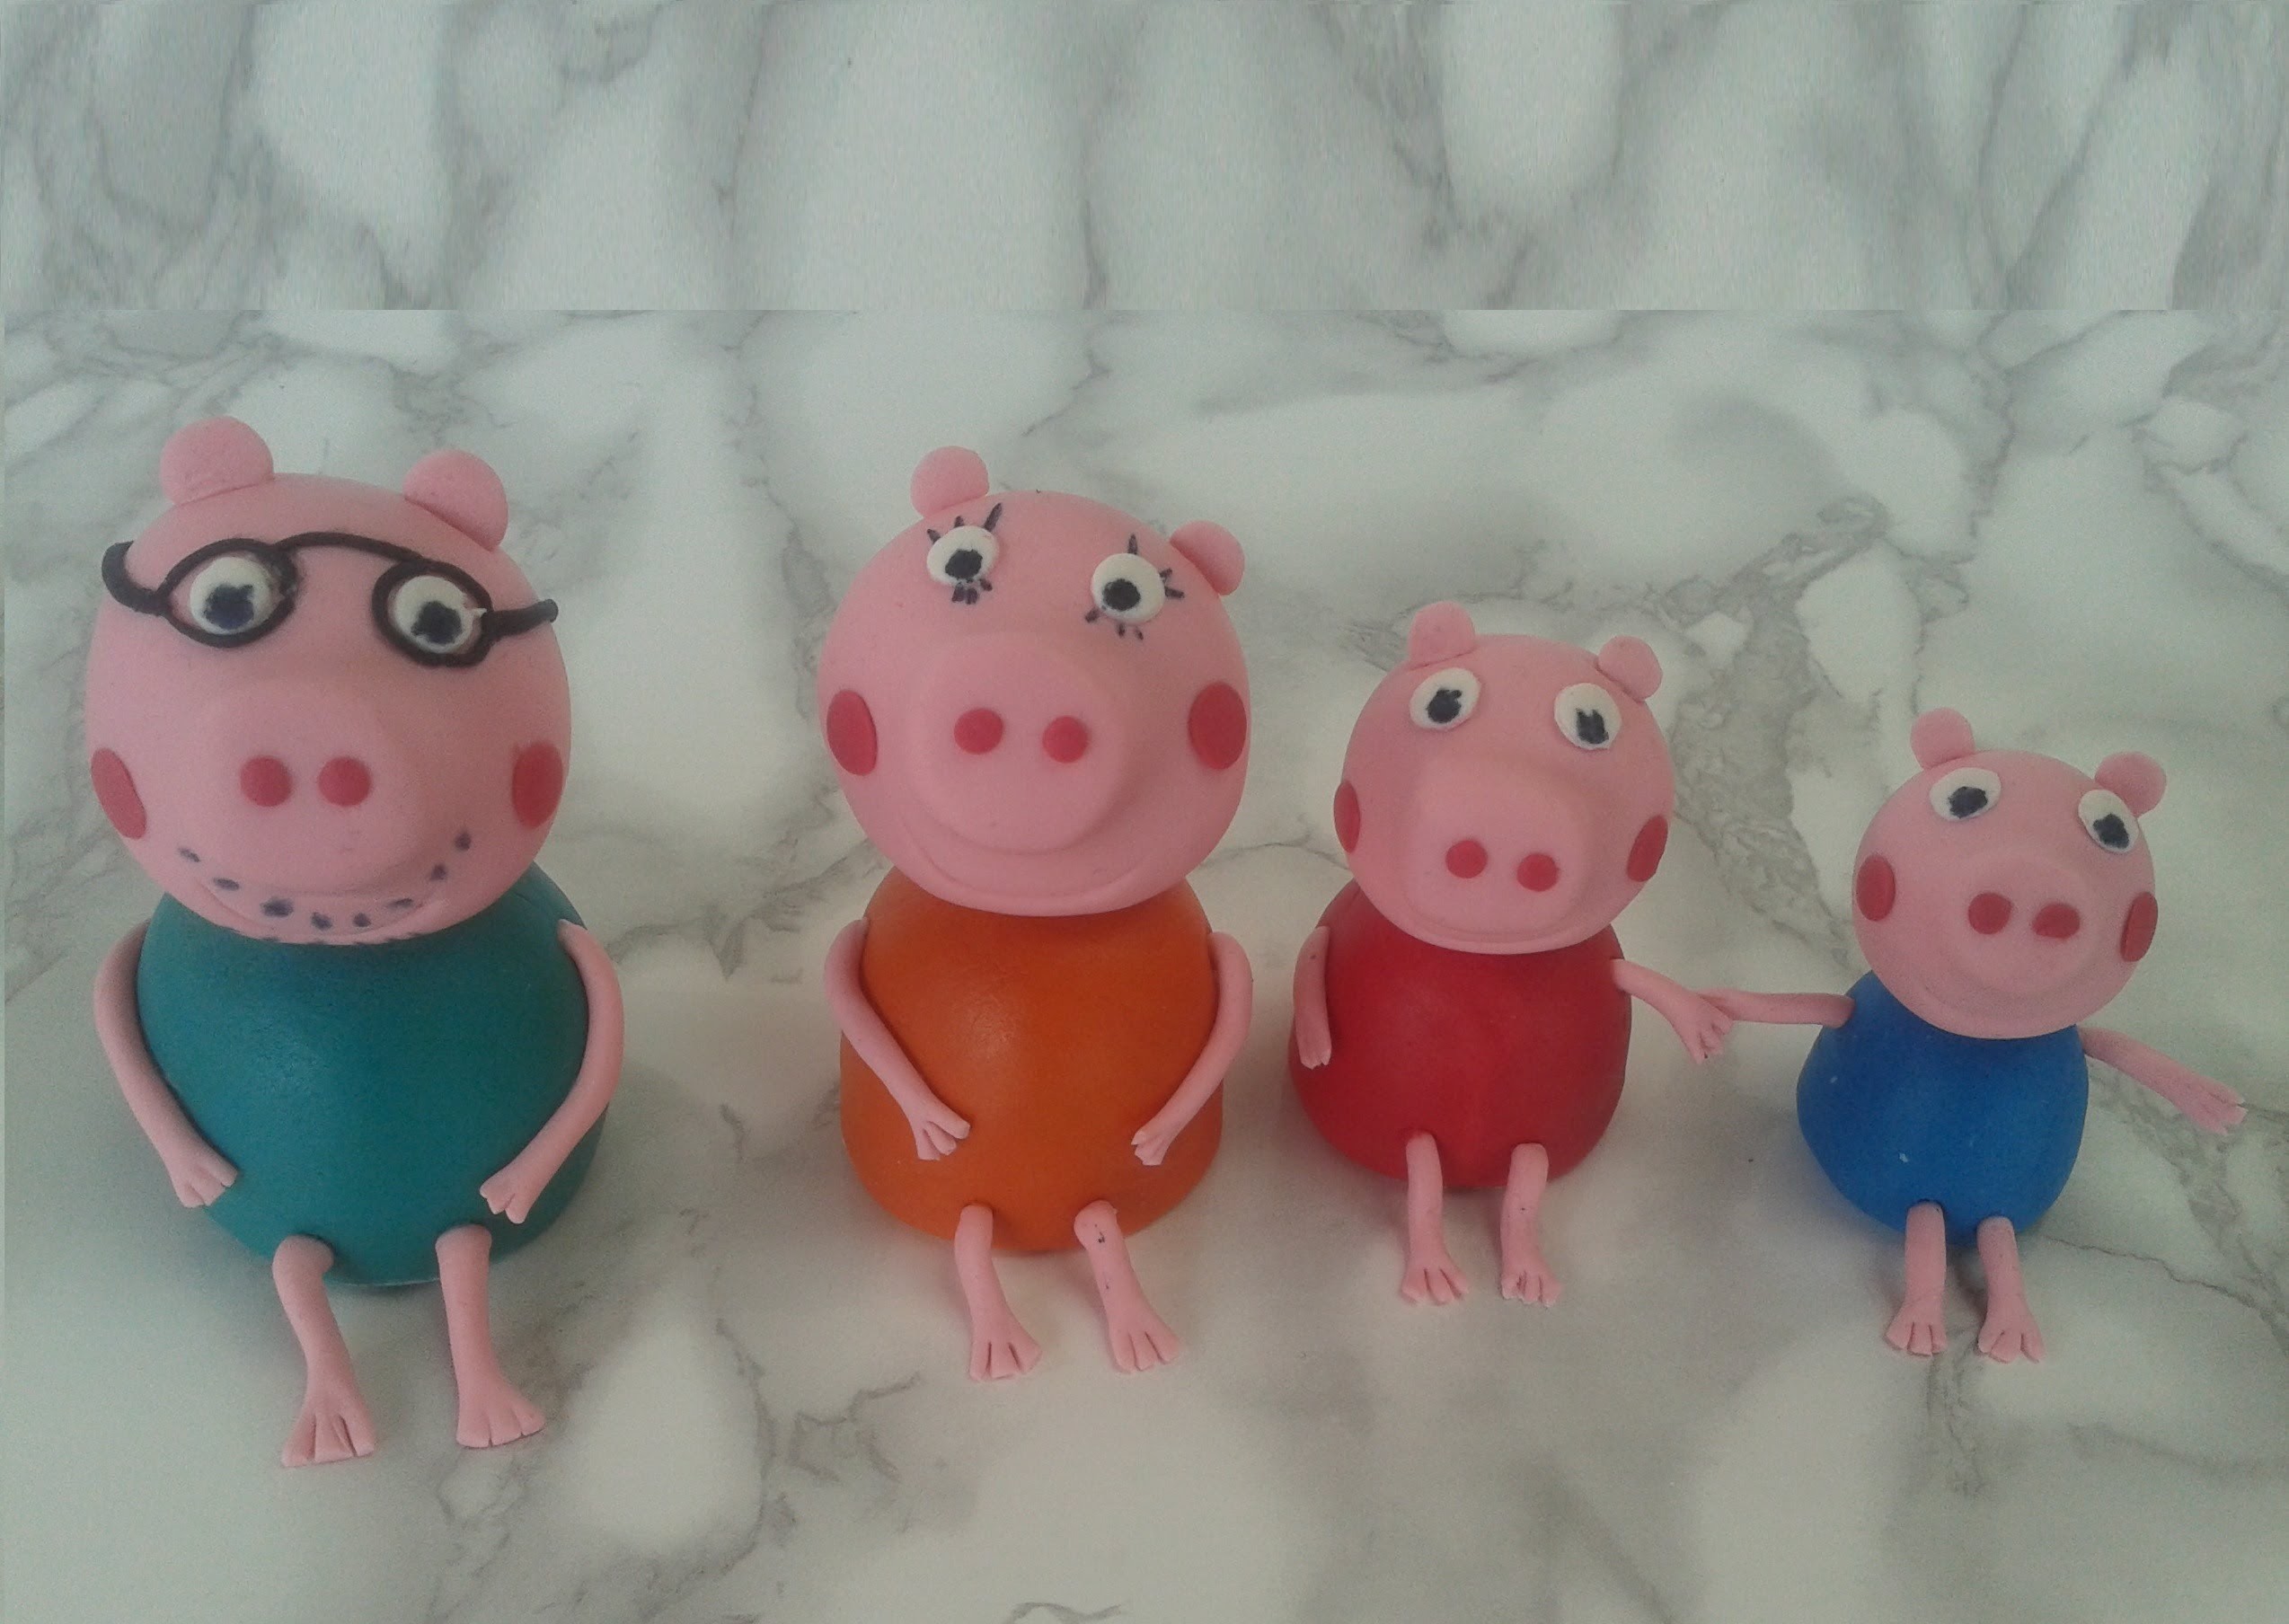 Tutorial Famiglia  Peppa Pig in pasta di zucchero, Family peppa pig fondant  tutorial